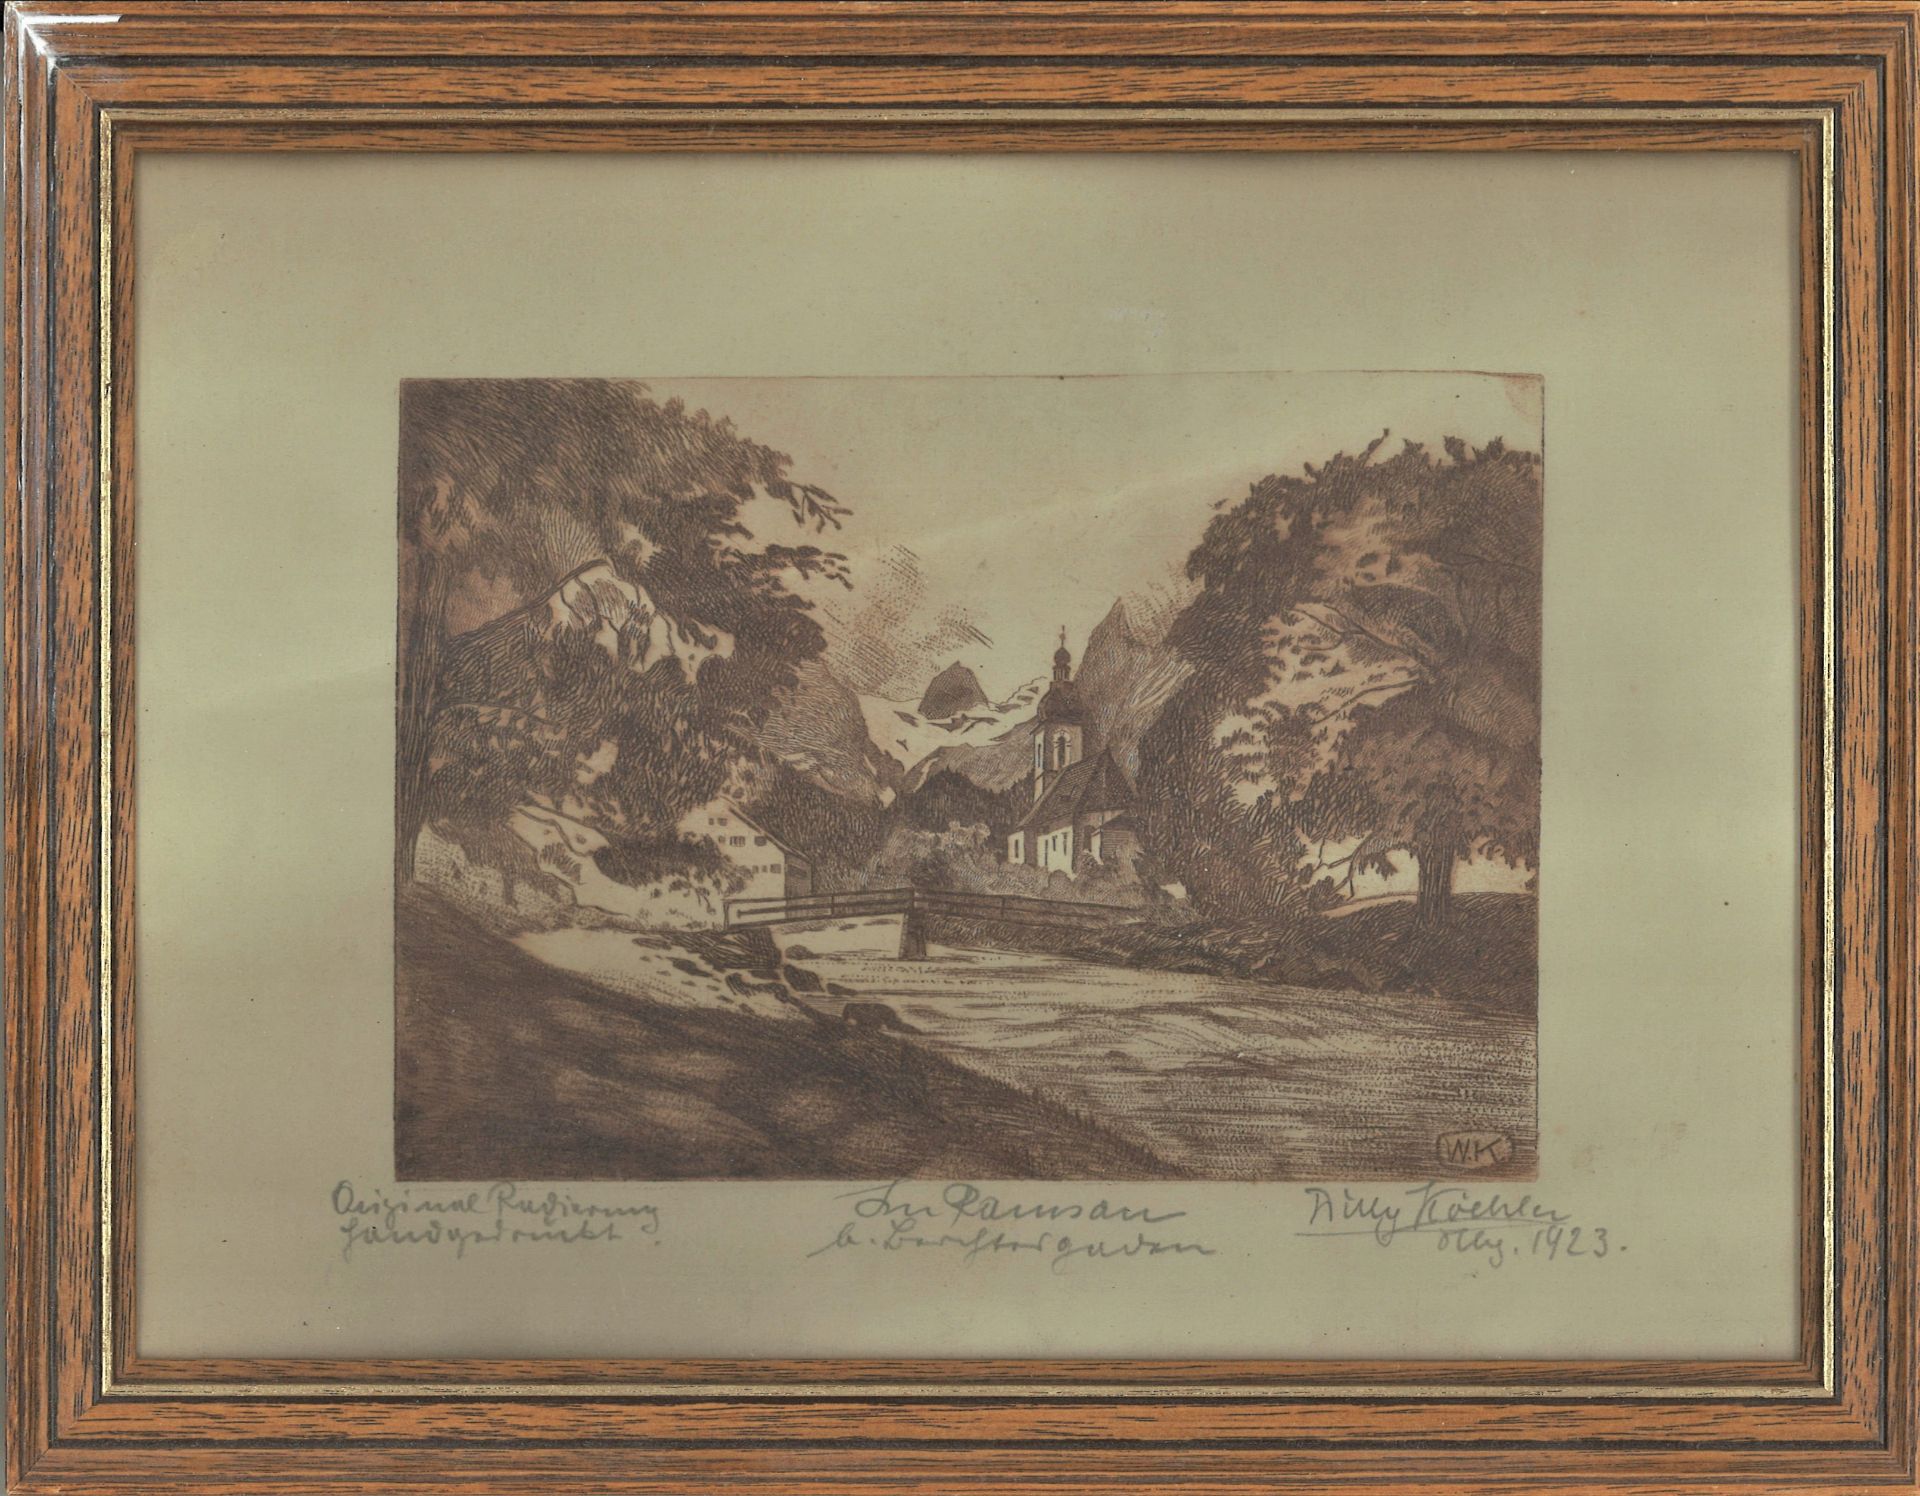 W. Koehler, Original Radierung "Die Ramsau", hinter Glas gerahmt. Rechts unten Signatur. Gesamtmaße: